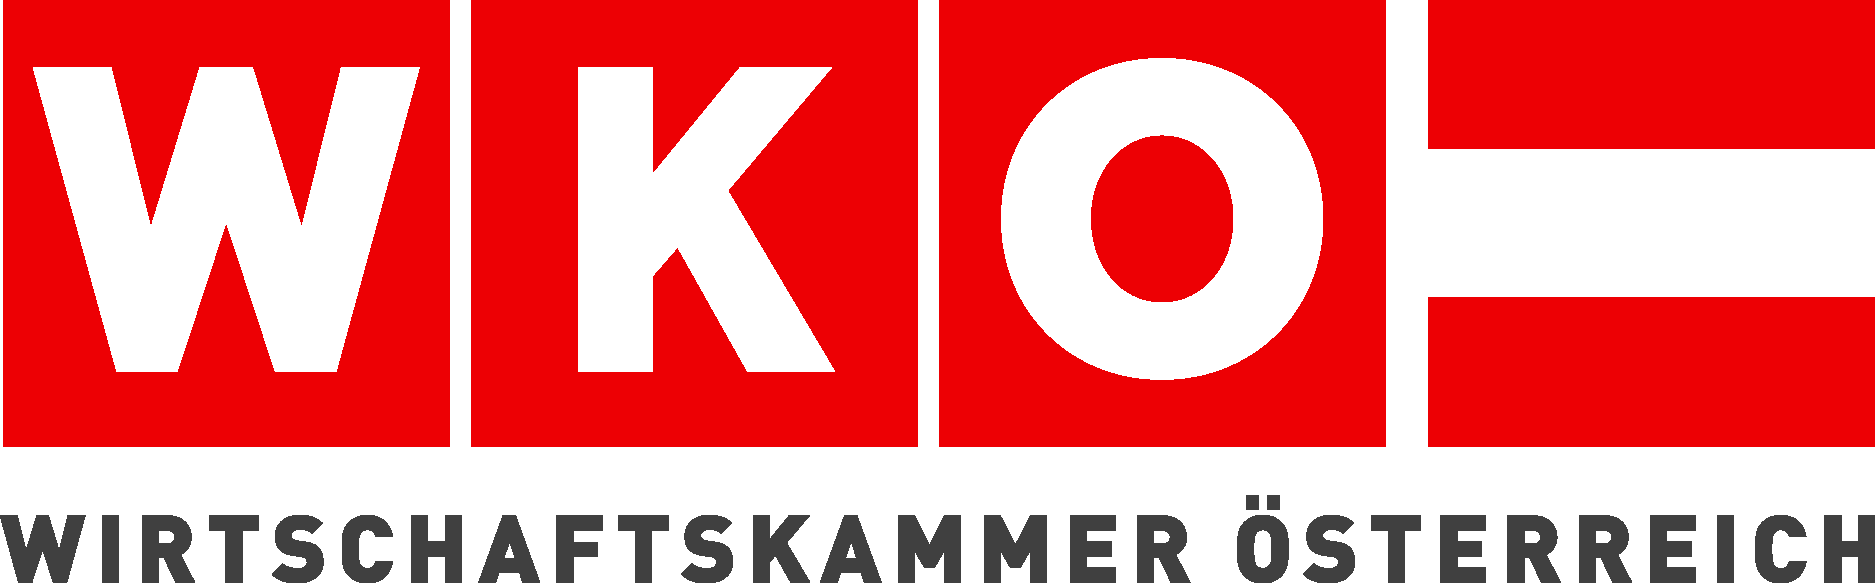 Wirtschaftskammer Osterreich Logo Vector - (.Ai .PNG .SVG .EPS Free ...